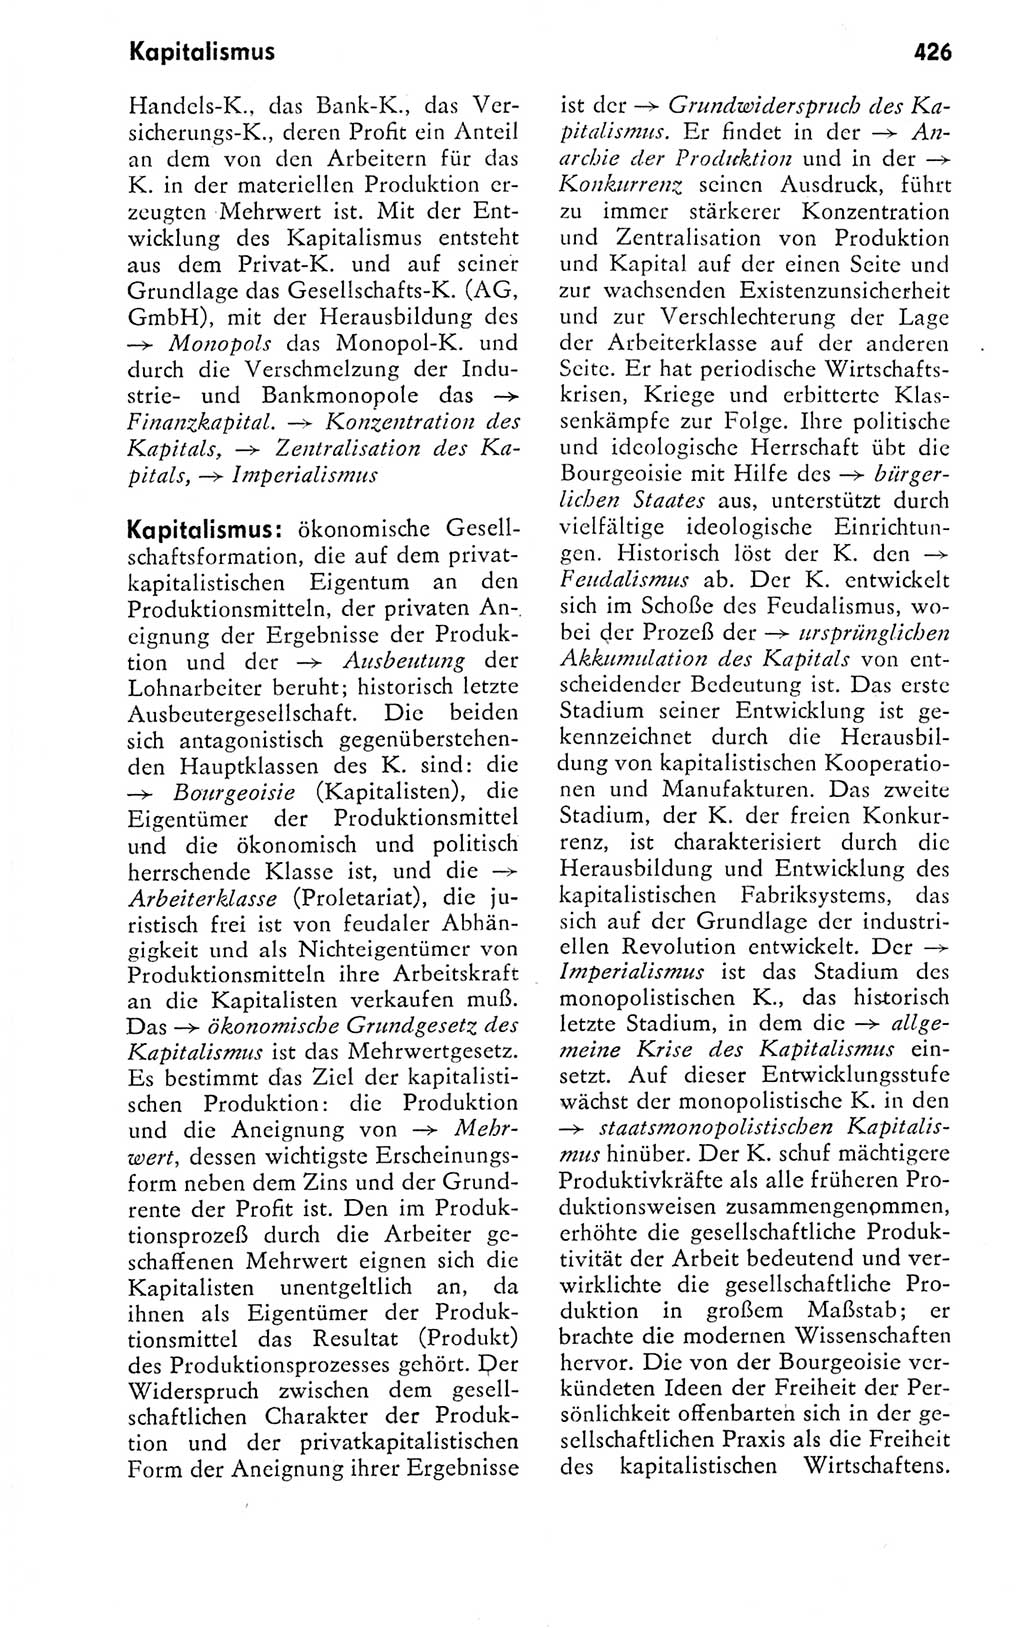 Kleines politisches Wörterbuch [Deutsche Demokratische Republik (DDR)] 1978, Seite 426 (Kl. pol. Wb. DDR 1978, S. 426)